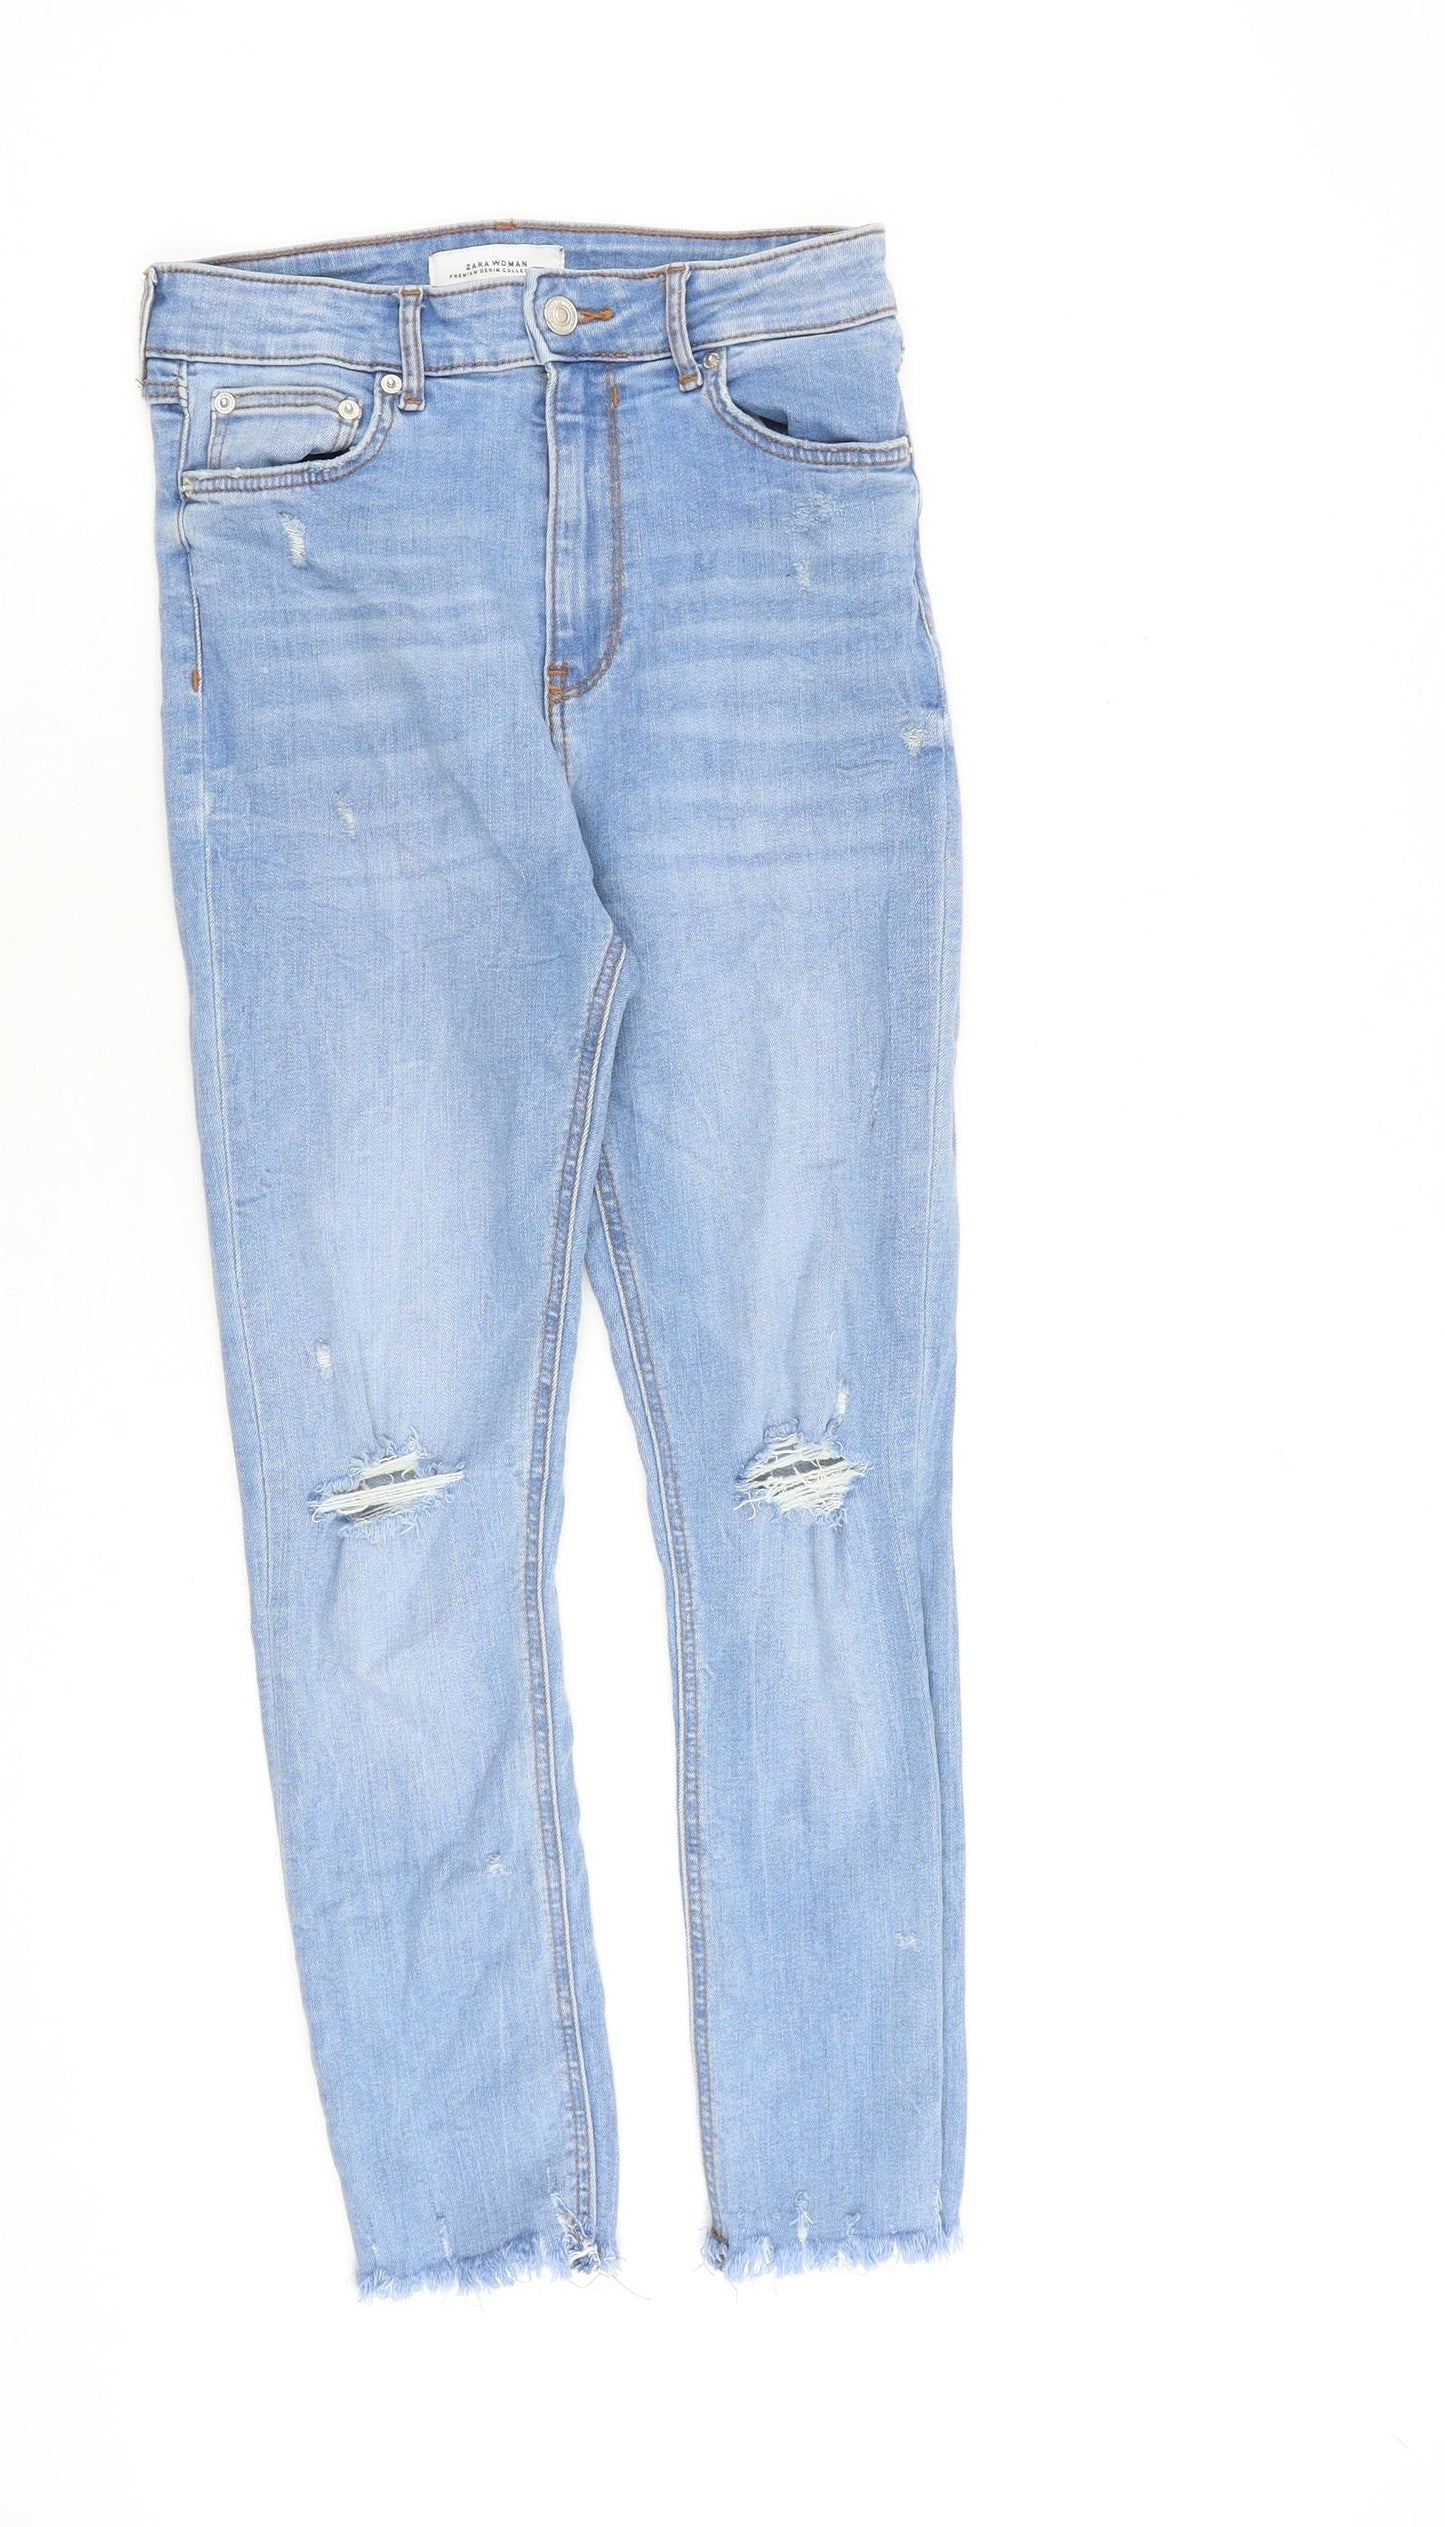 Zara Womens Blue Cotton Skinny Jeans Size 10 L26 in Regular Zip